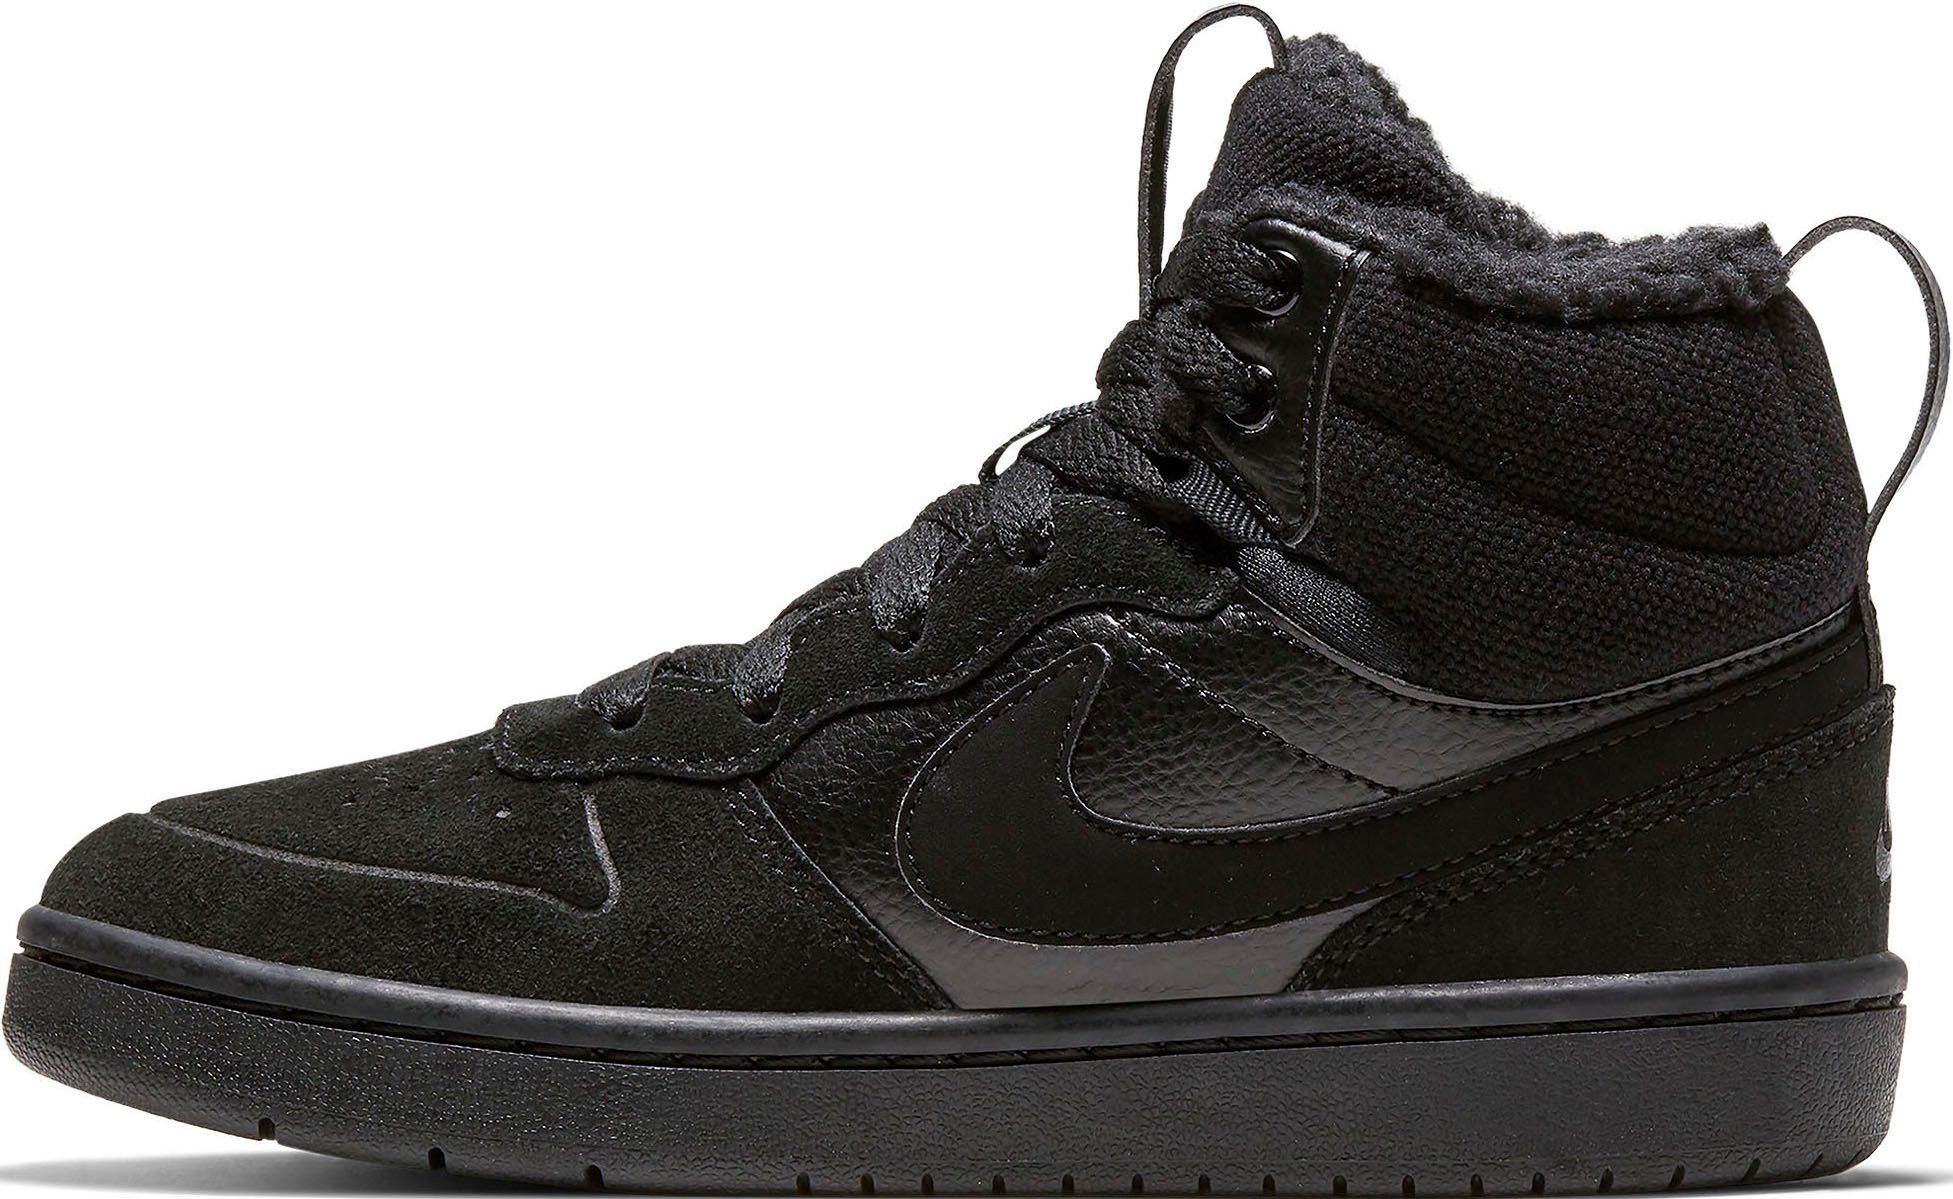 BOROUGH Force MID Nike des den 1 2 Sneaker COURT Design Air Spuren auf Sportswear